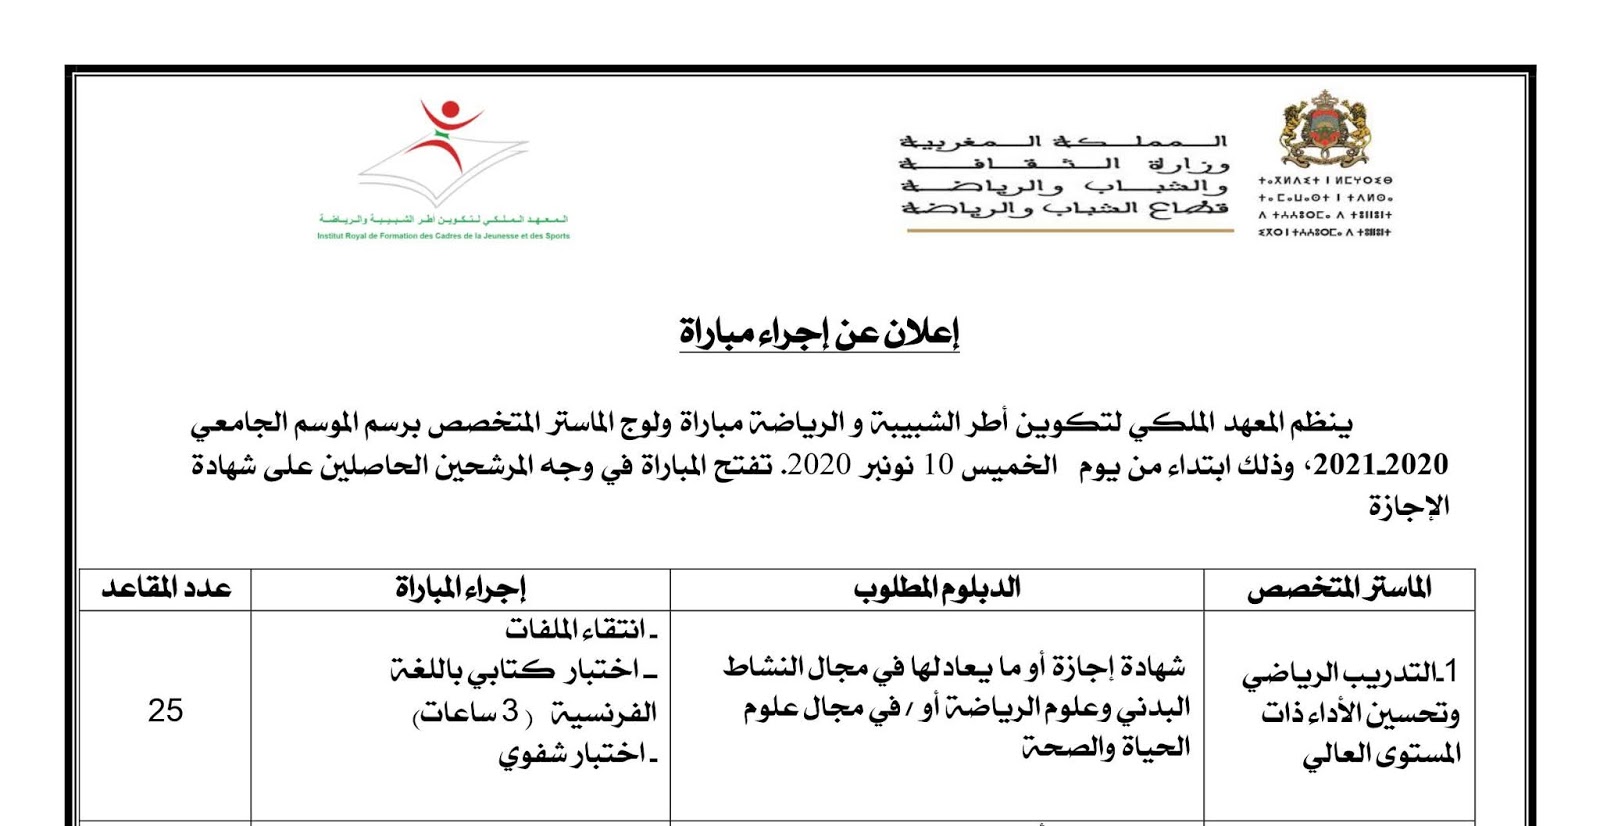 نموذج تصريح سفر الحامل الخطوط السعودية pdf